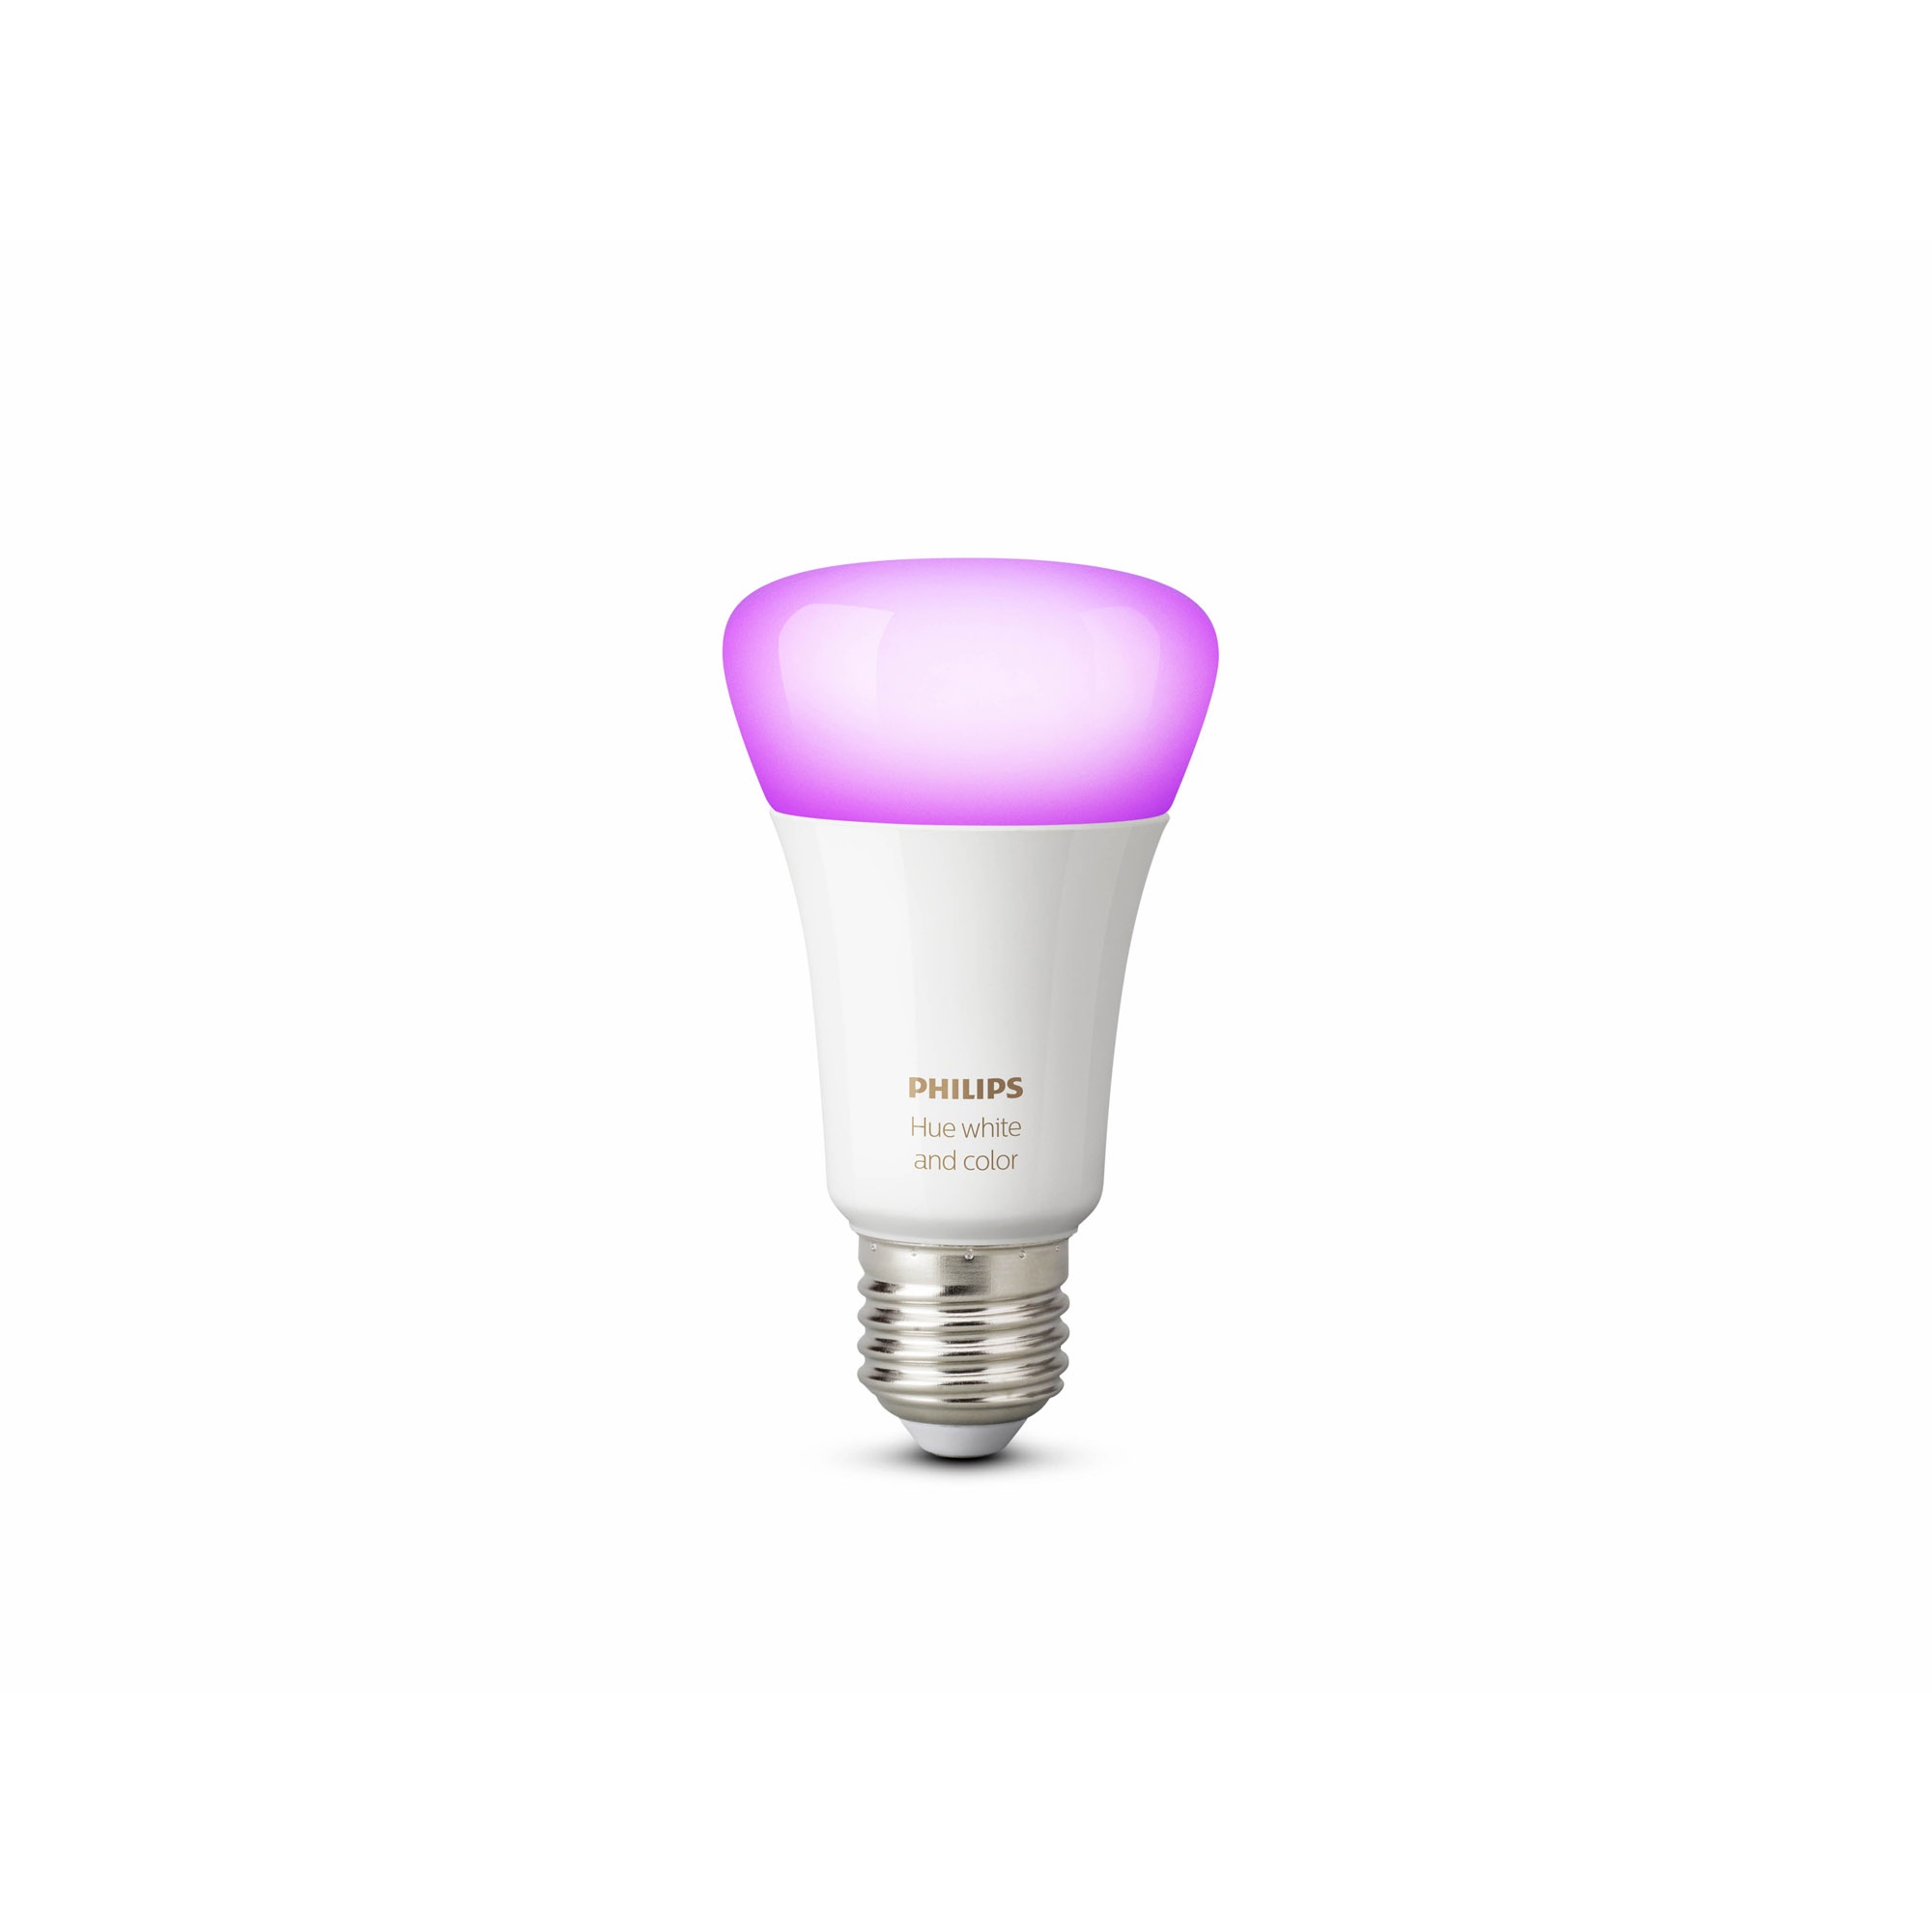 Product Onafhankelijk agitatie Philips Hue Hue standaardlamp wit en gekleurd licht 1-pack - Light Unit